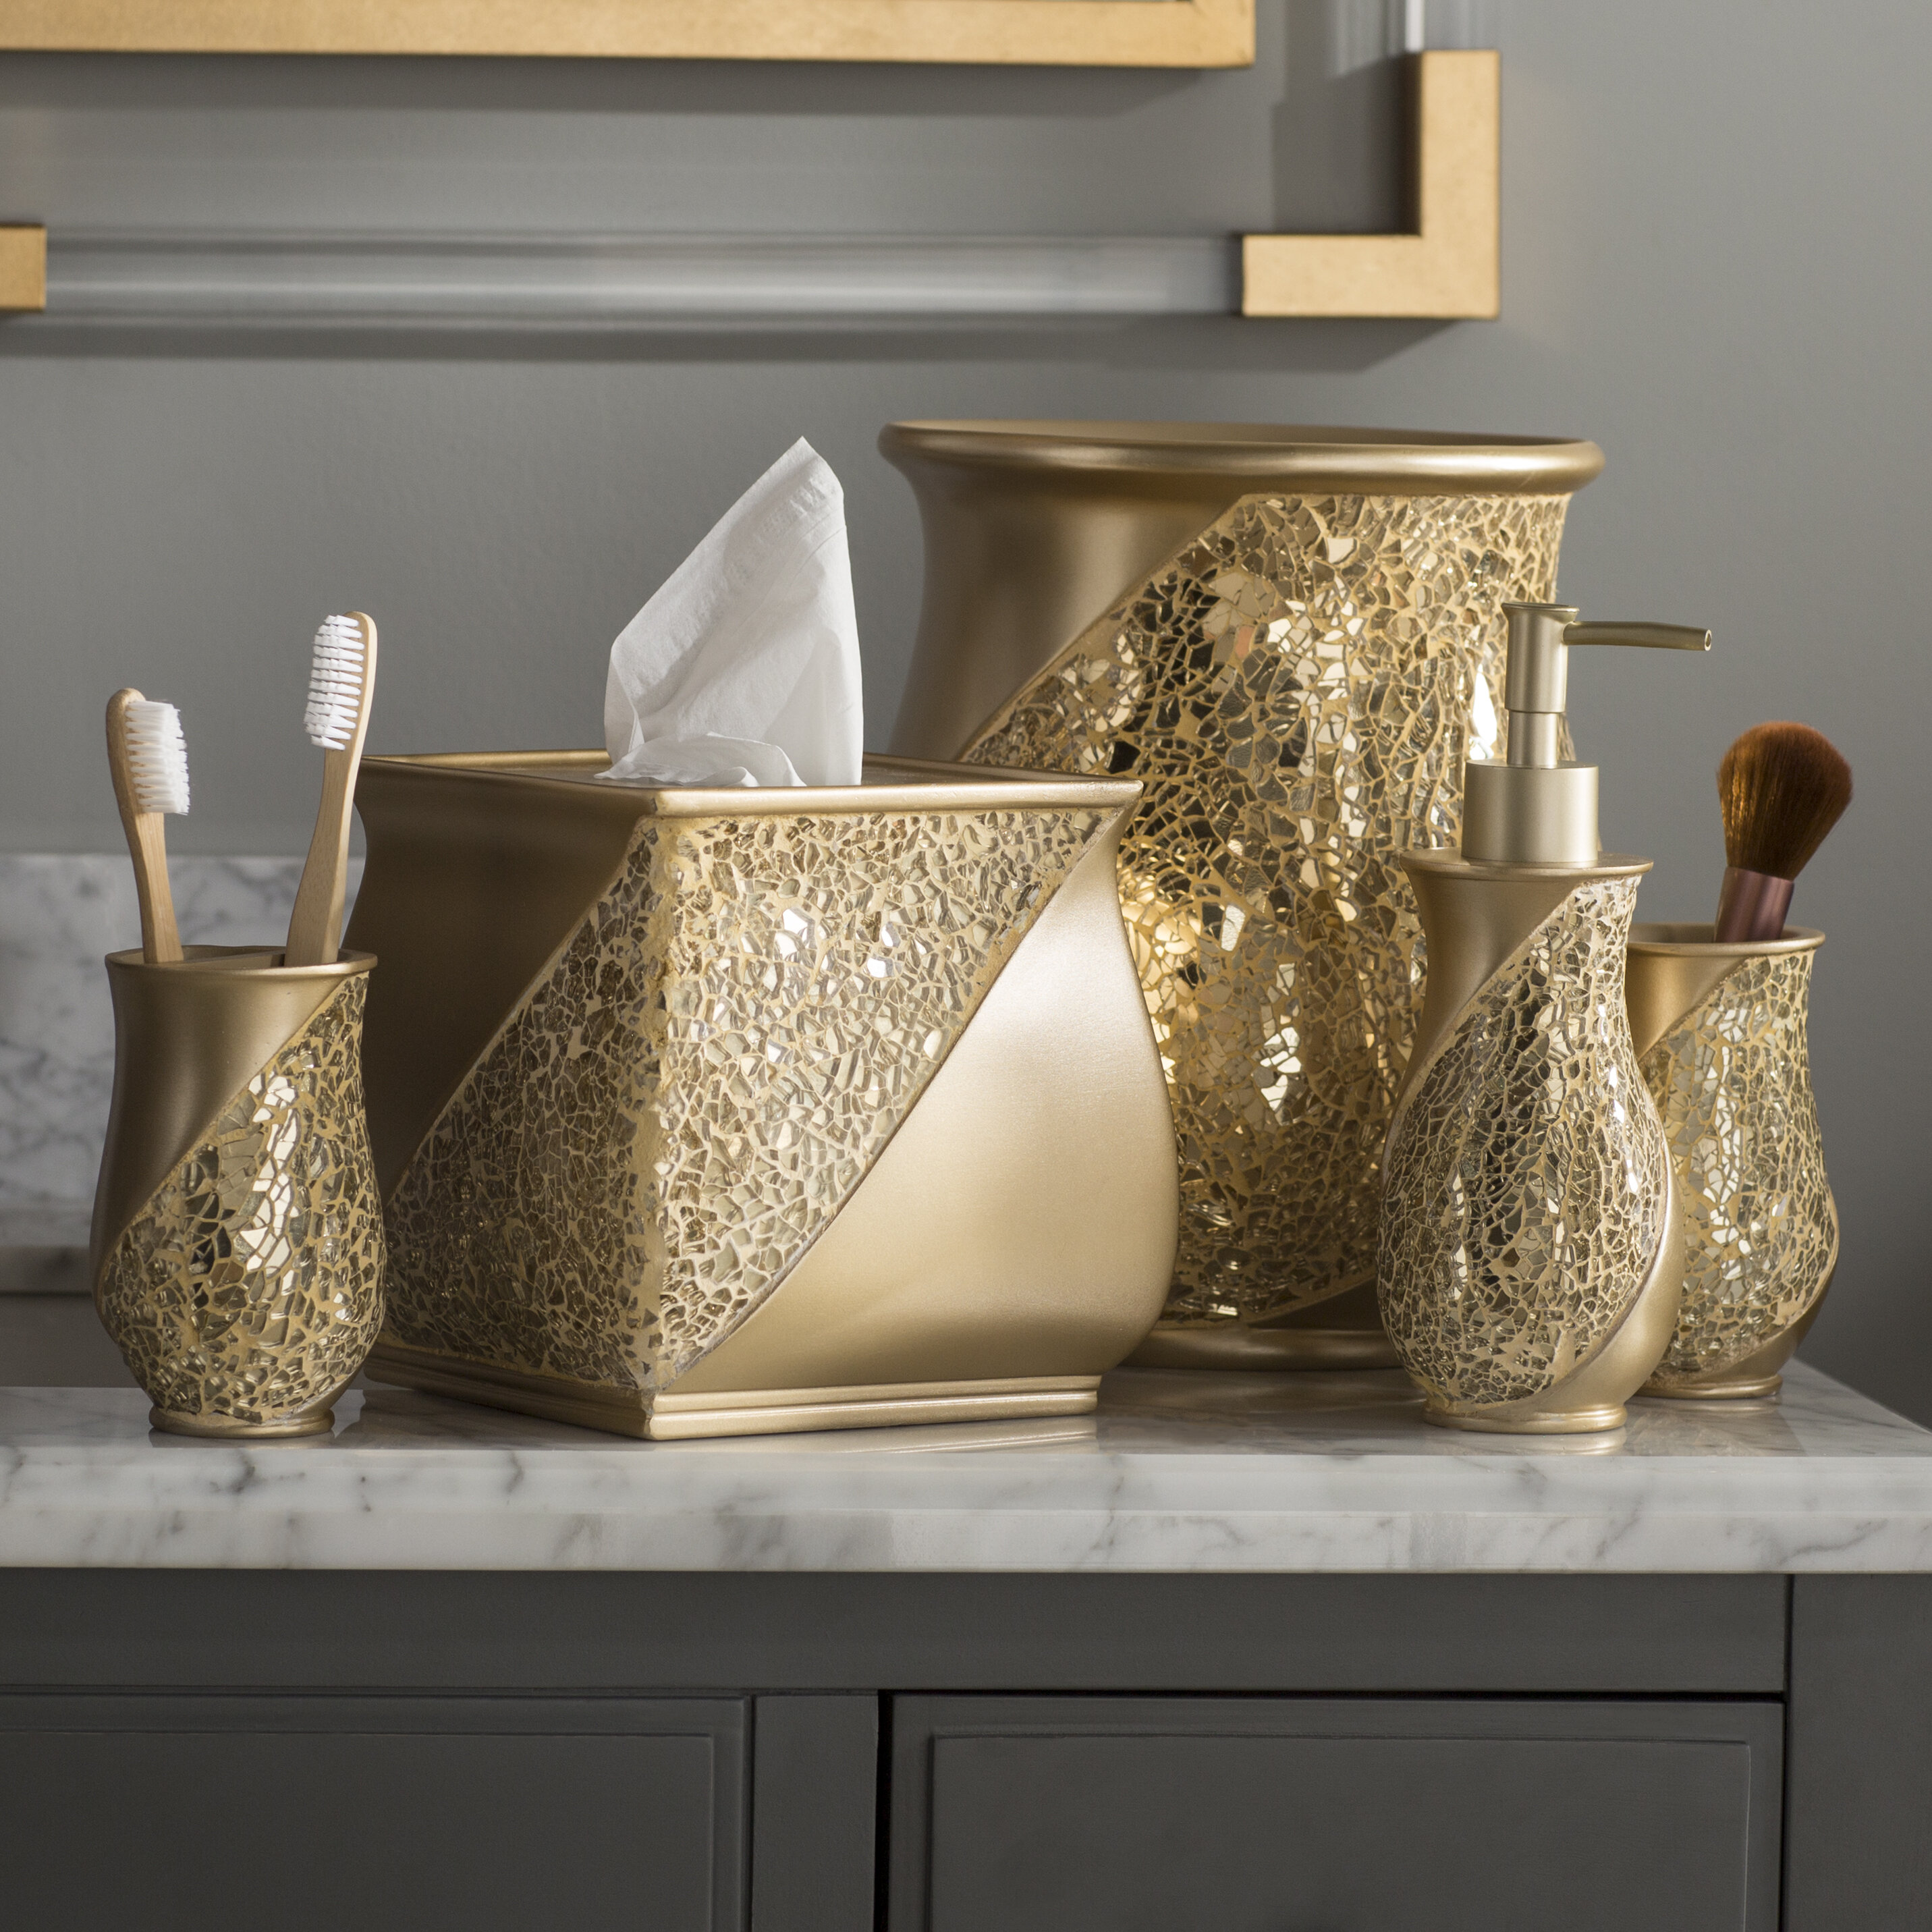 Elegant 6 Piece Bathroom Ceramic Accessory Set High Quality White and gold 